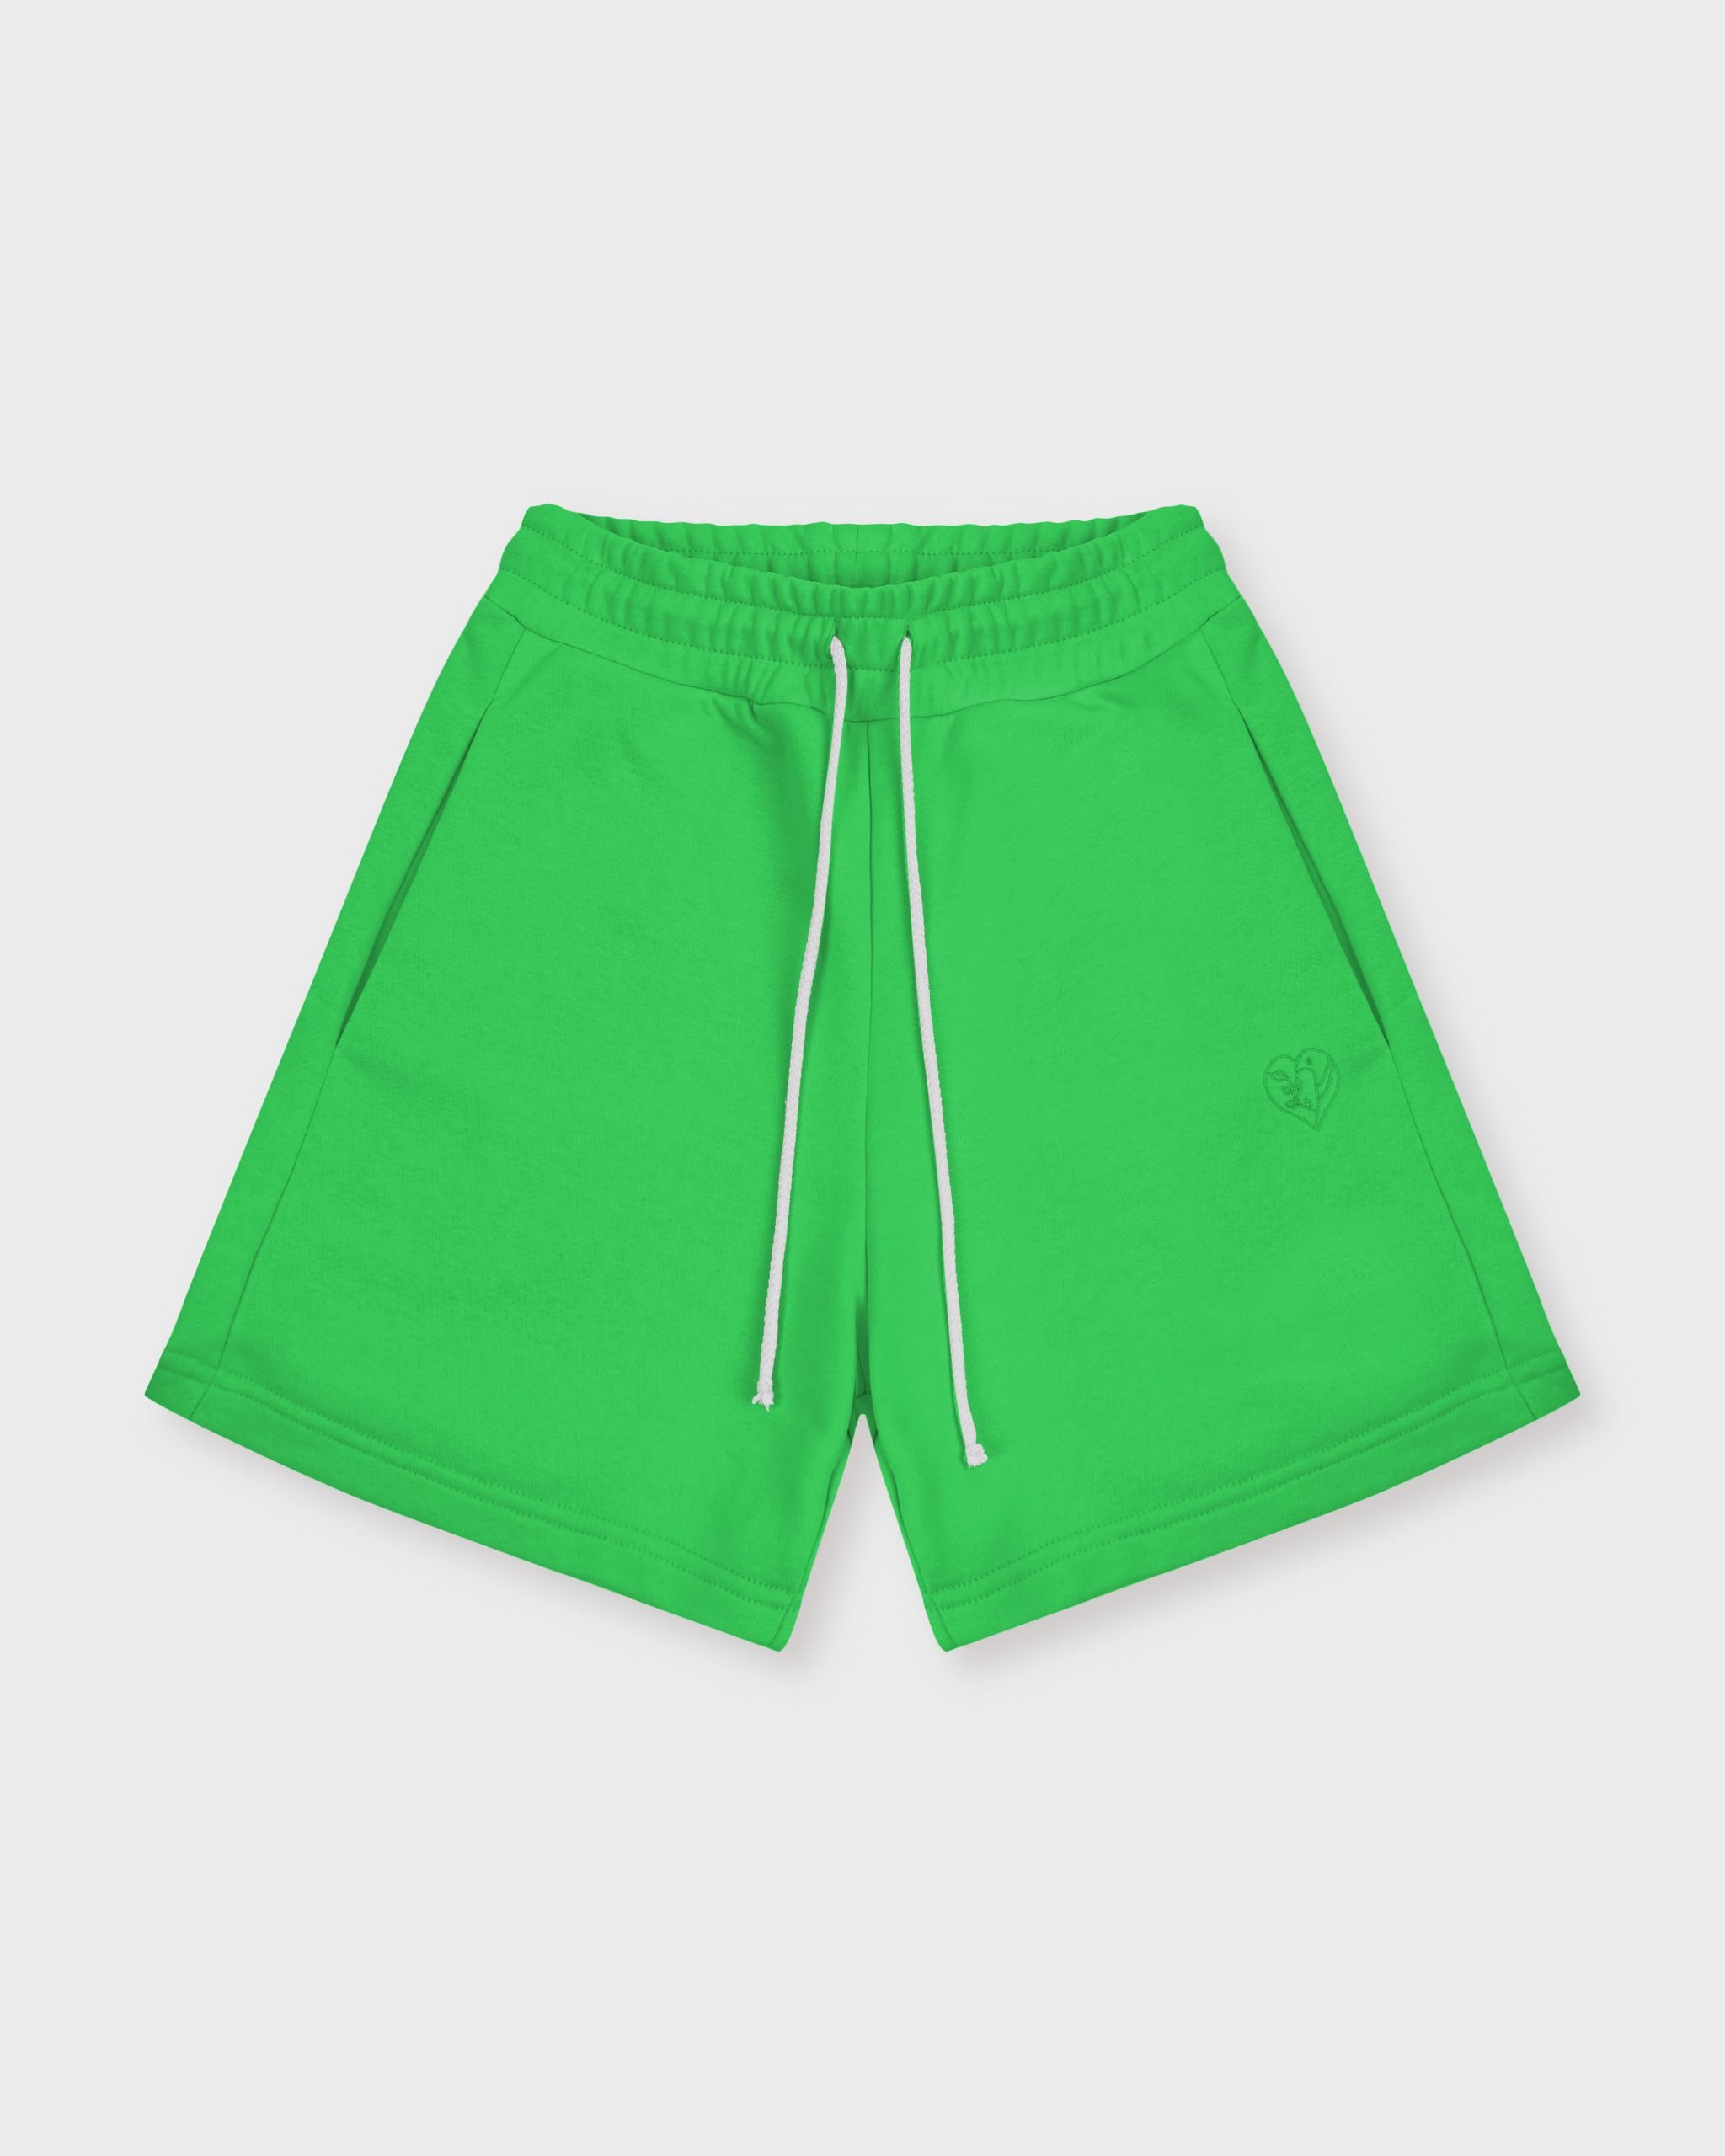 Повседневные шорты женские Atmosphere Summer vibes зеленые L